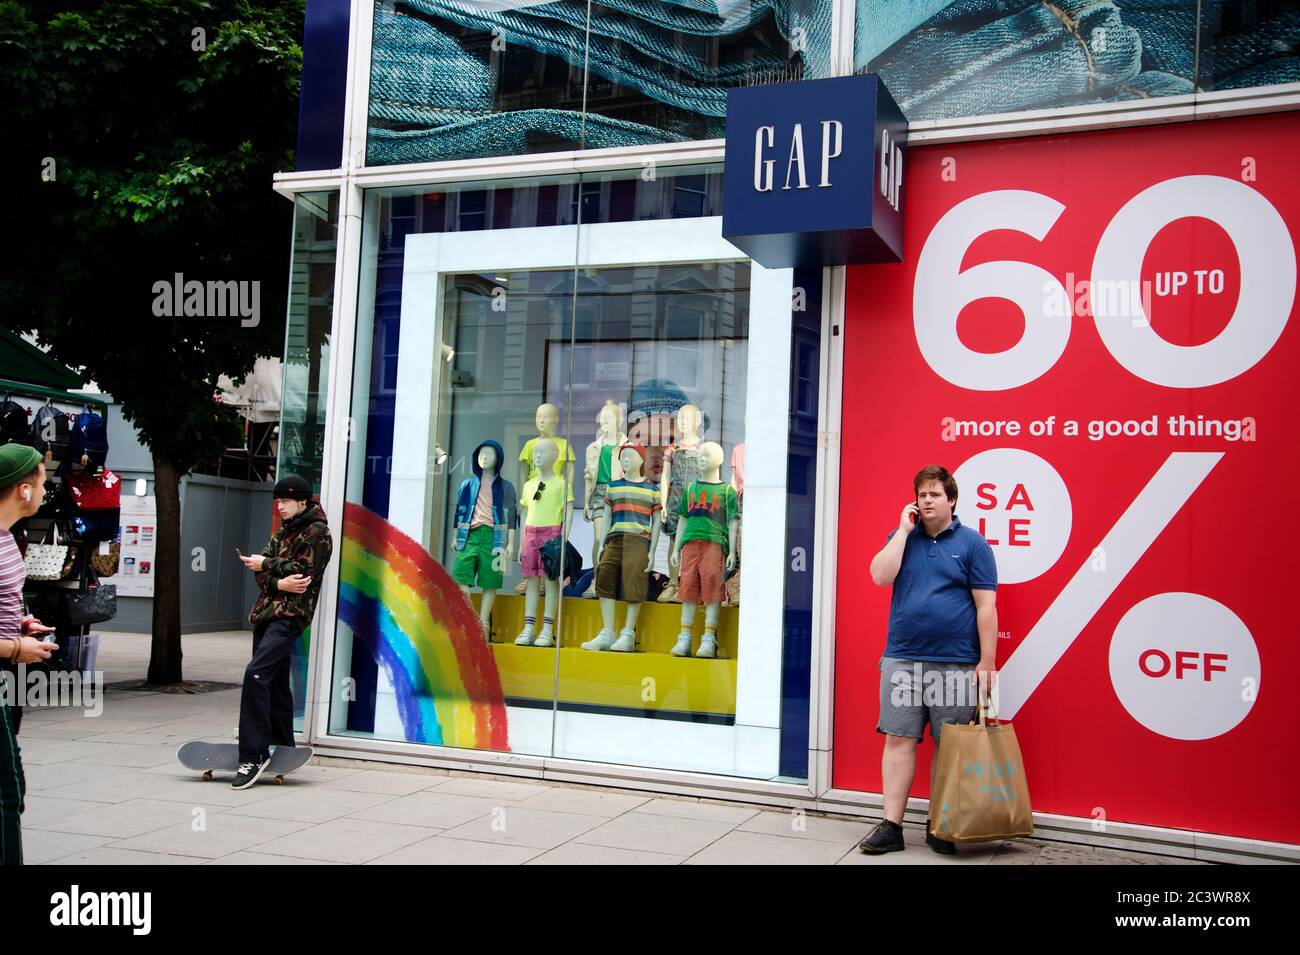 London während der Pandemie, Juni 2020. Oxford Street. Wiedereröffnung der Geschäfte. Der Bekleidungsladen GAP hat ein Schild im Fenster, das 60 % Rabatt bietet. Stockfoto